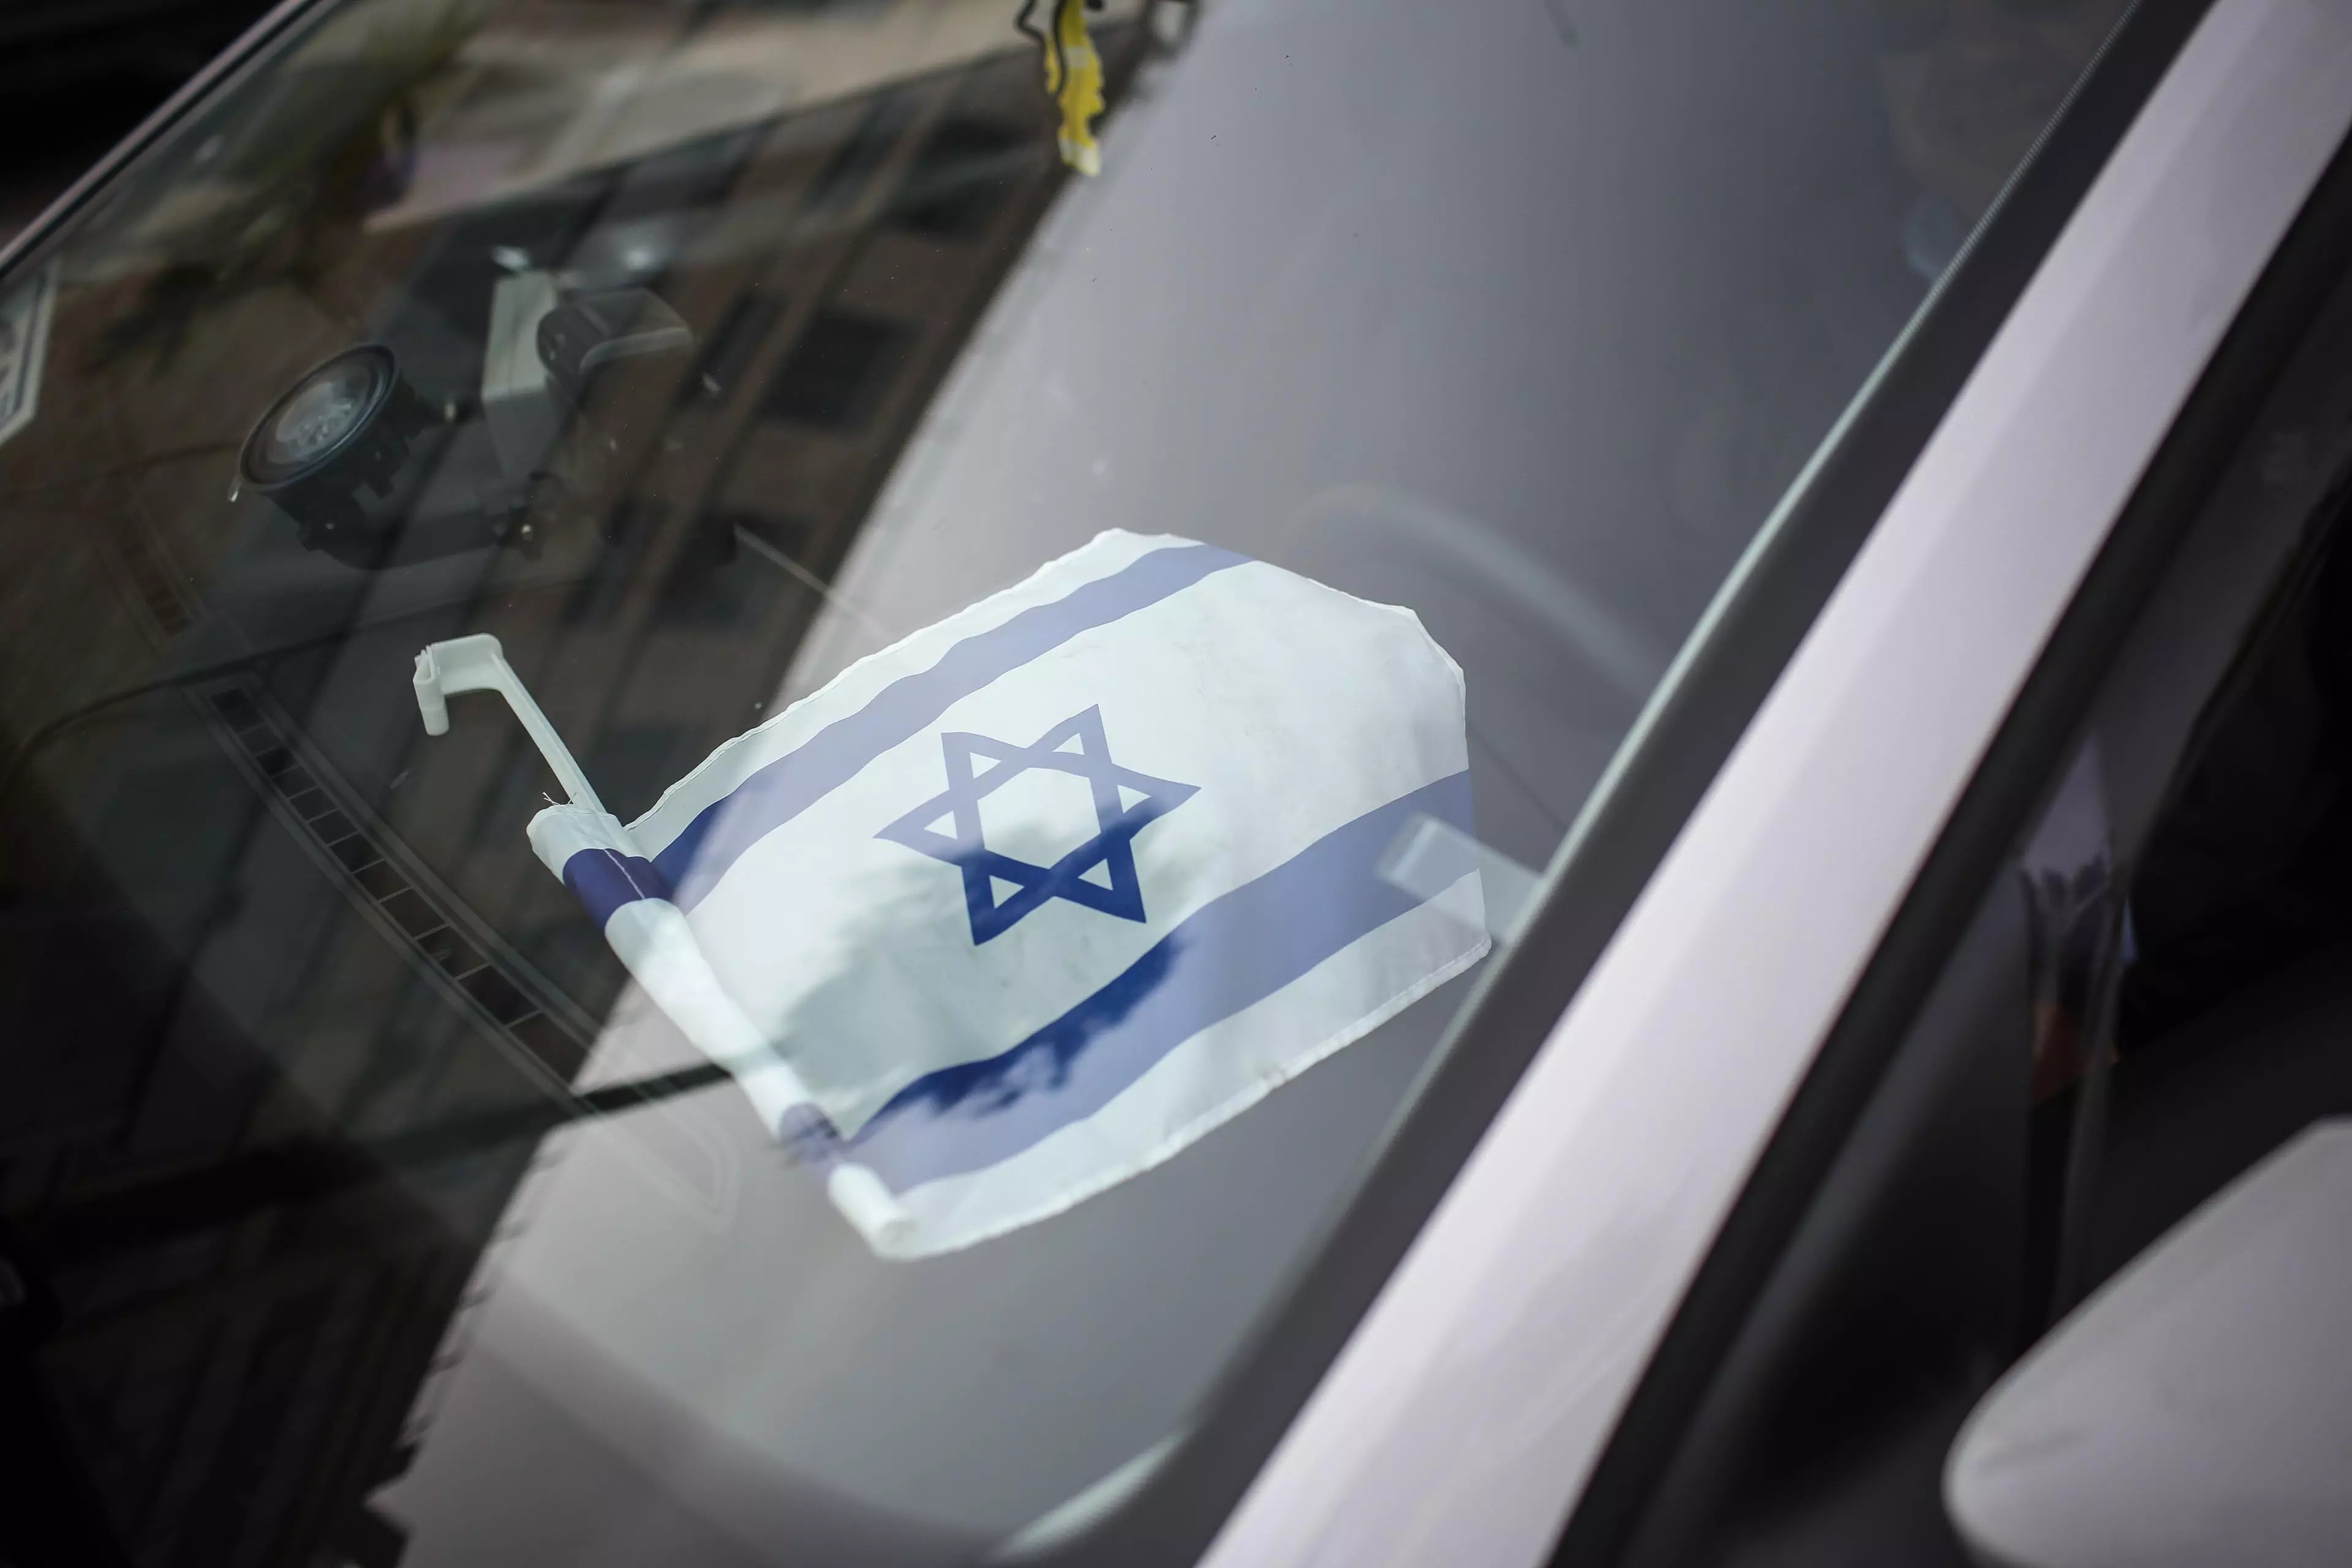 נהגי מוניות יהודים בירושלים, דואגים כי יחשבו שהם ערבים לאור המצב הבטחוני. נובמבר 2015